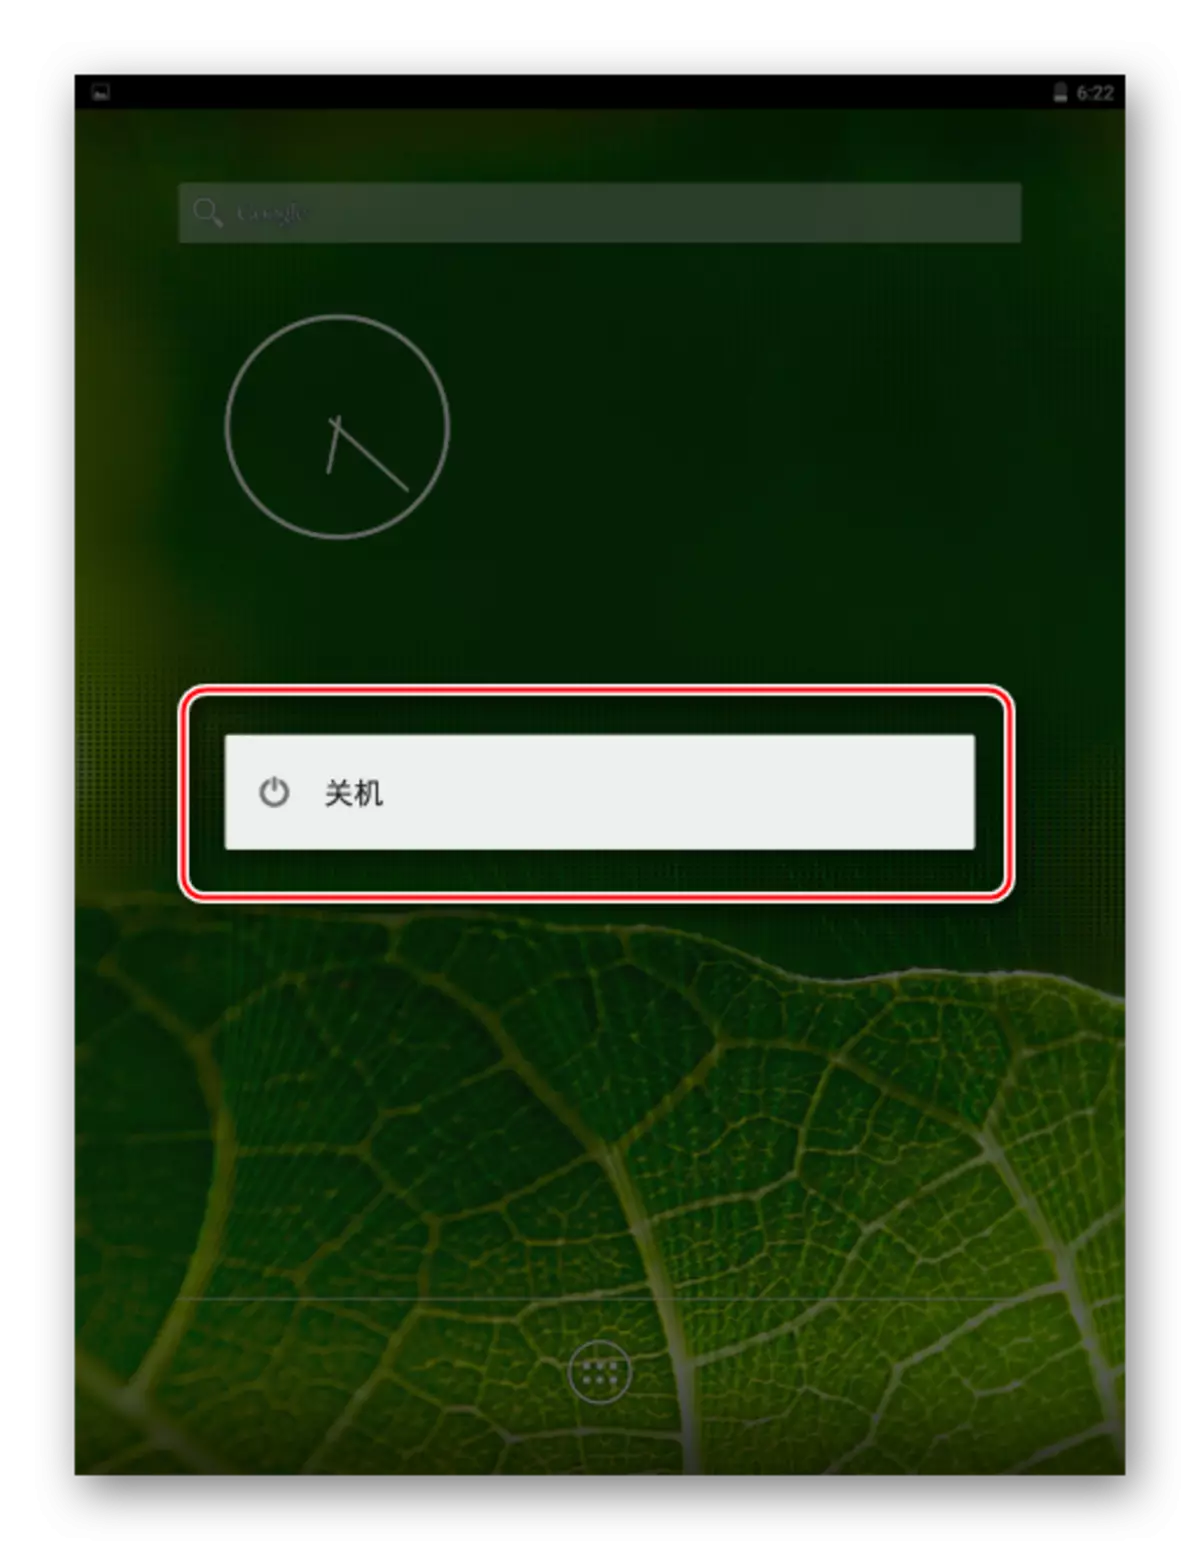 Xiaomi mapad 2 පිරිසිදු ඇන්ඩ්රොයිඩ්ගේ පාලනය යටතේ උපාංගය ක්රියා විරහිත කිරීම